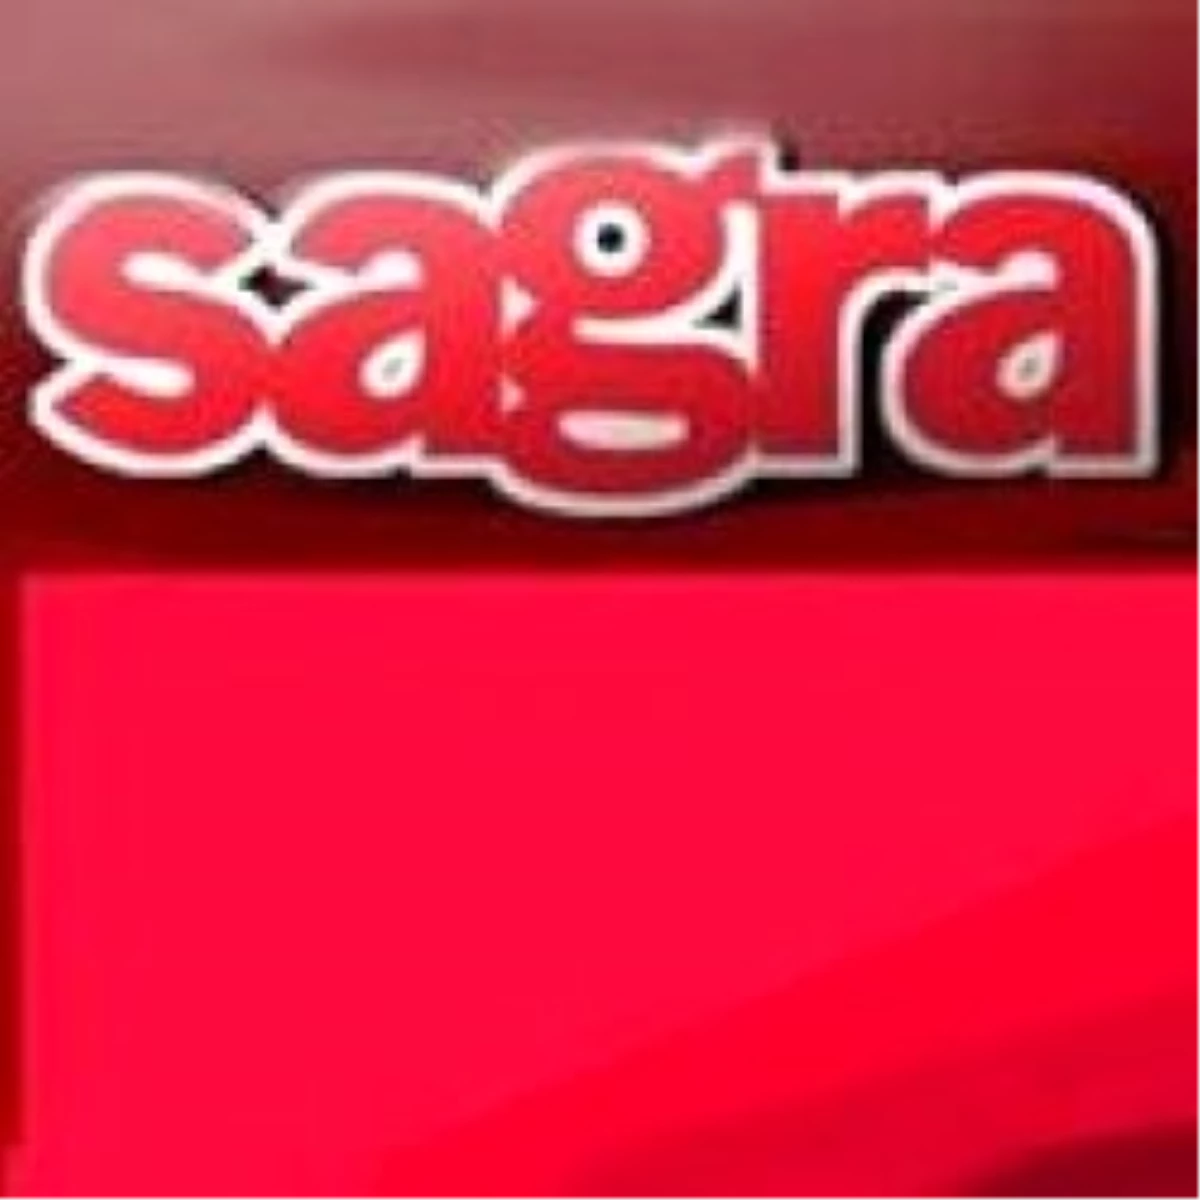 Sagra, Sanset Turizm\'e Satıldı